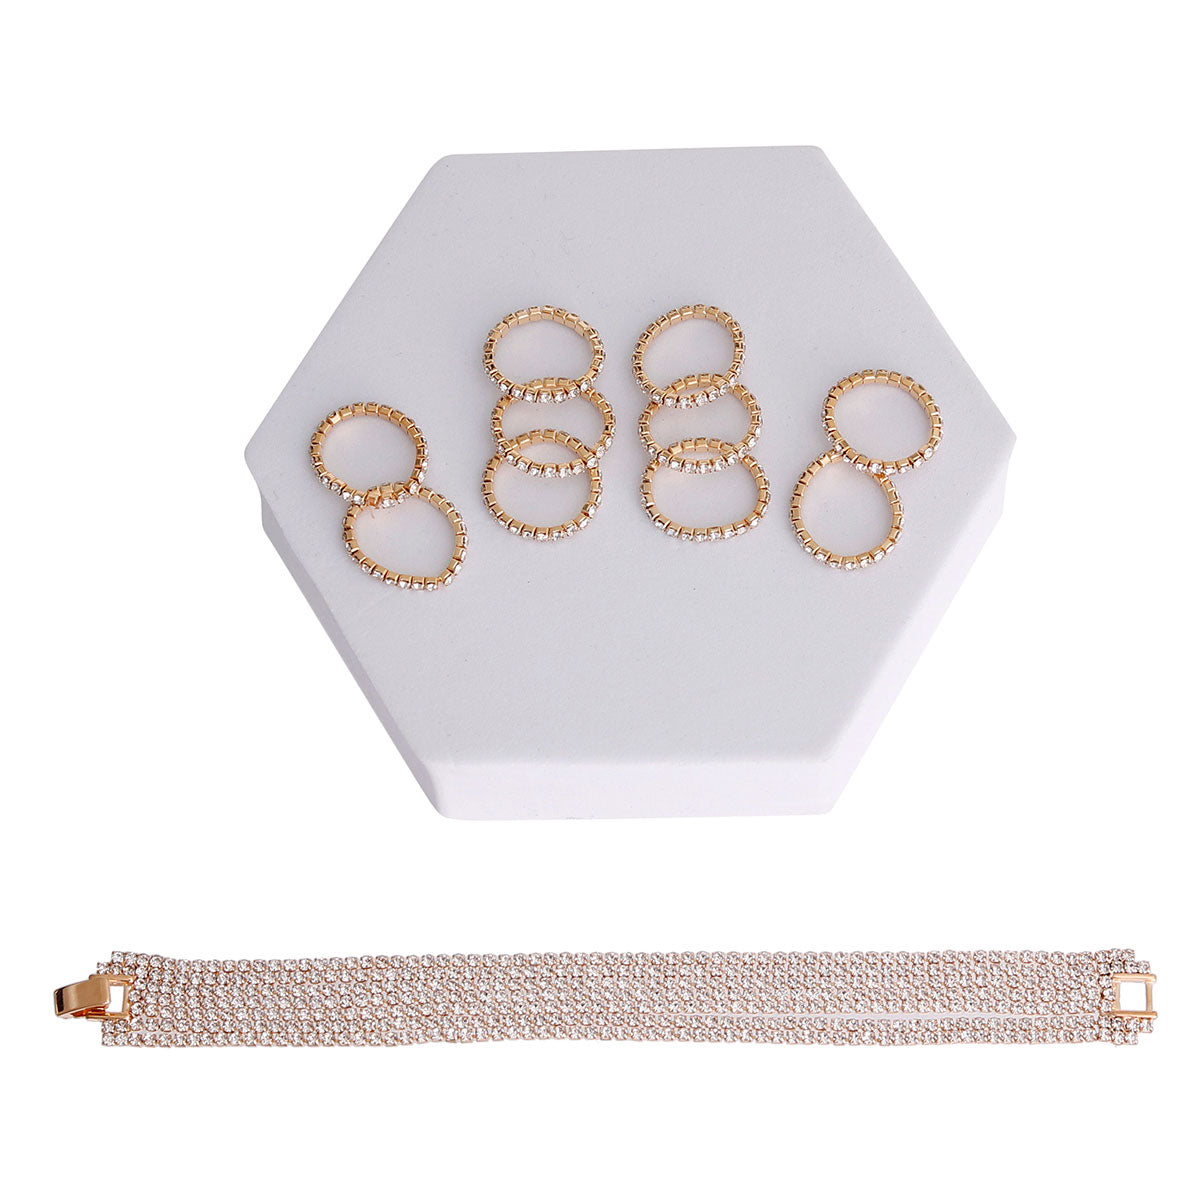 Gold Rhinestone Ring and Bracelet Set